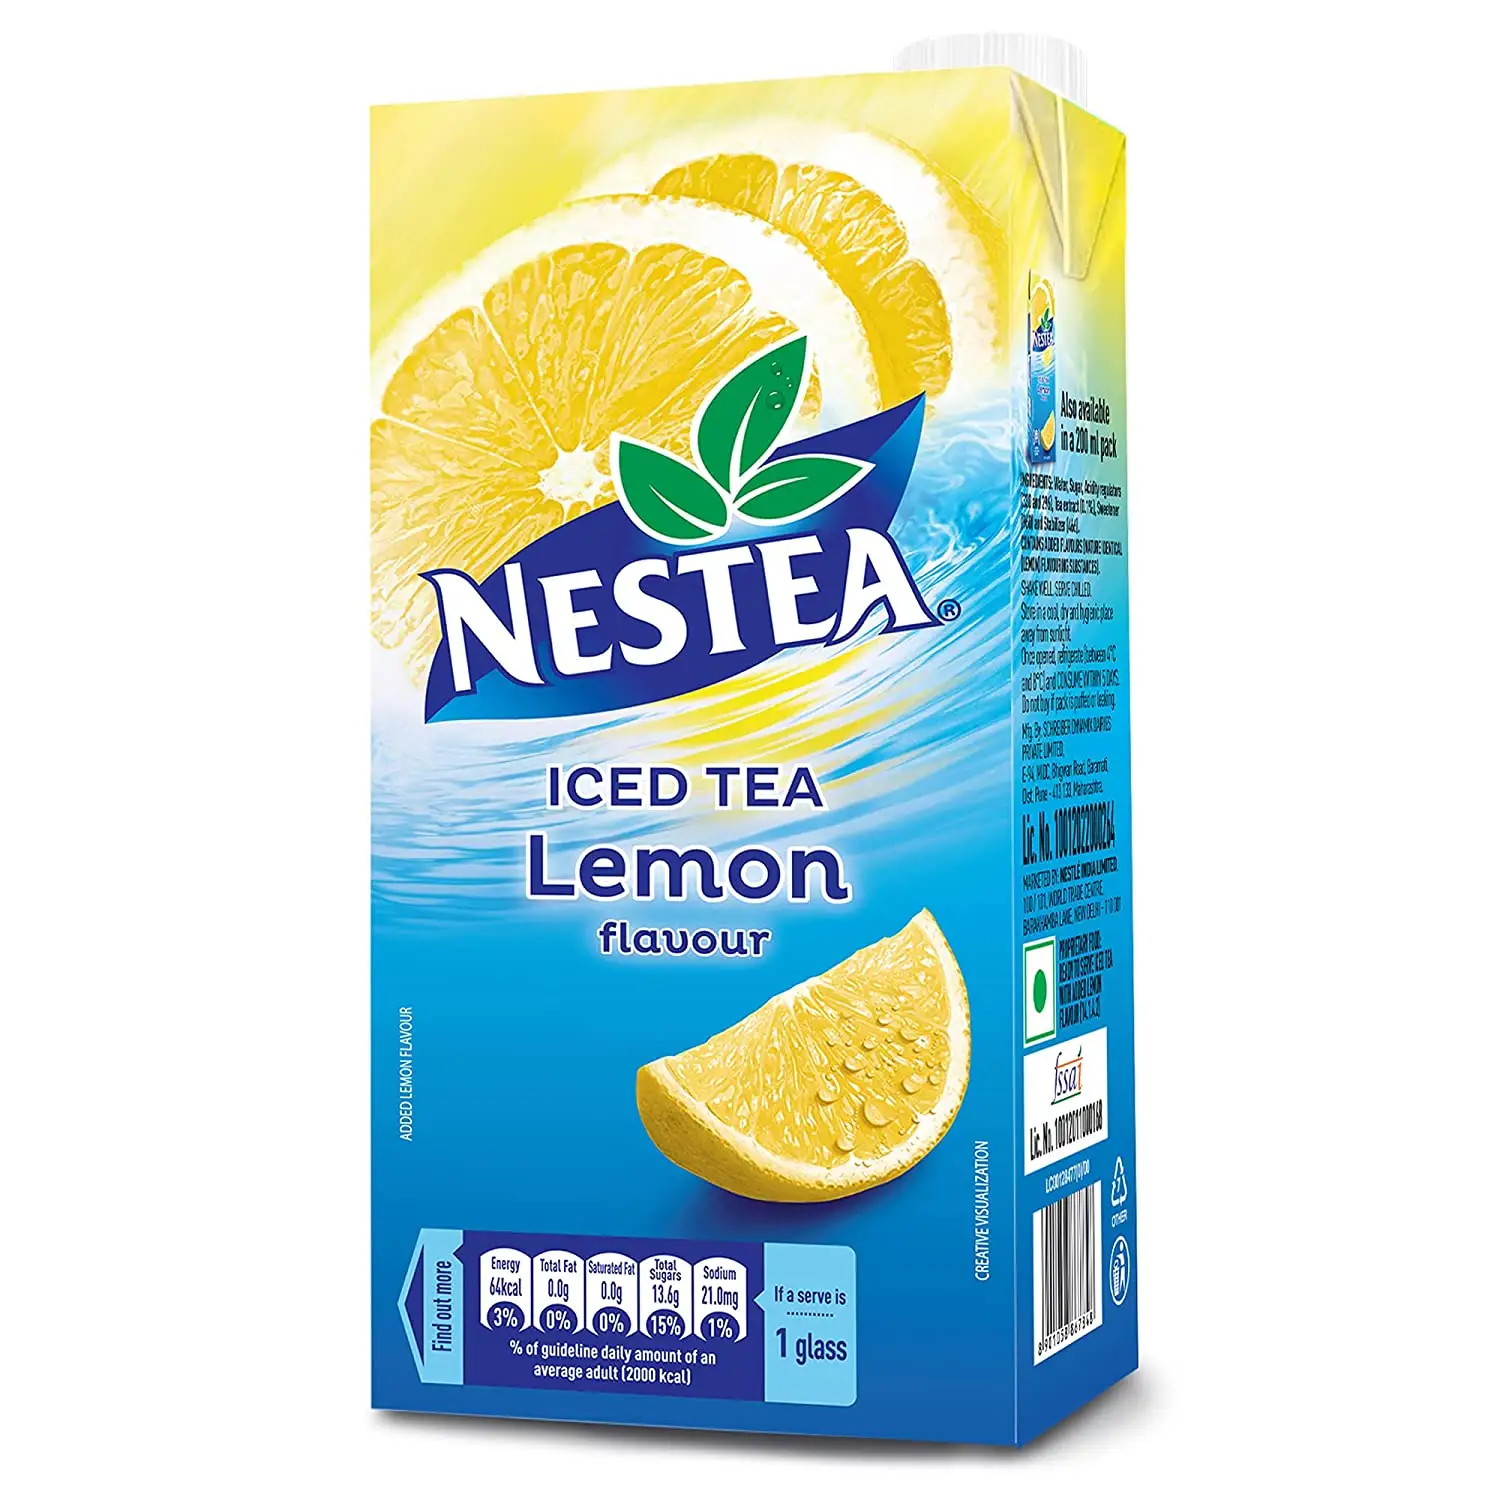 ネスレNESTEAオリジナルレモンアイスティーミックス-NESTEA POWDER 3 IN 1 POWER MIXS ICE TEA